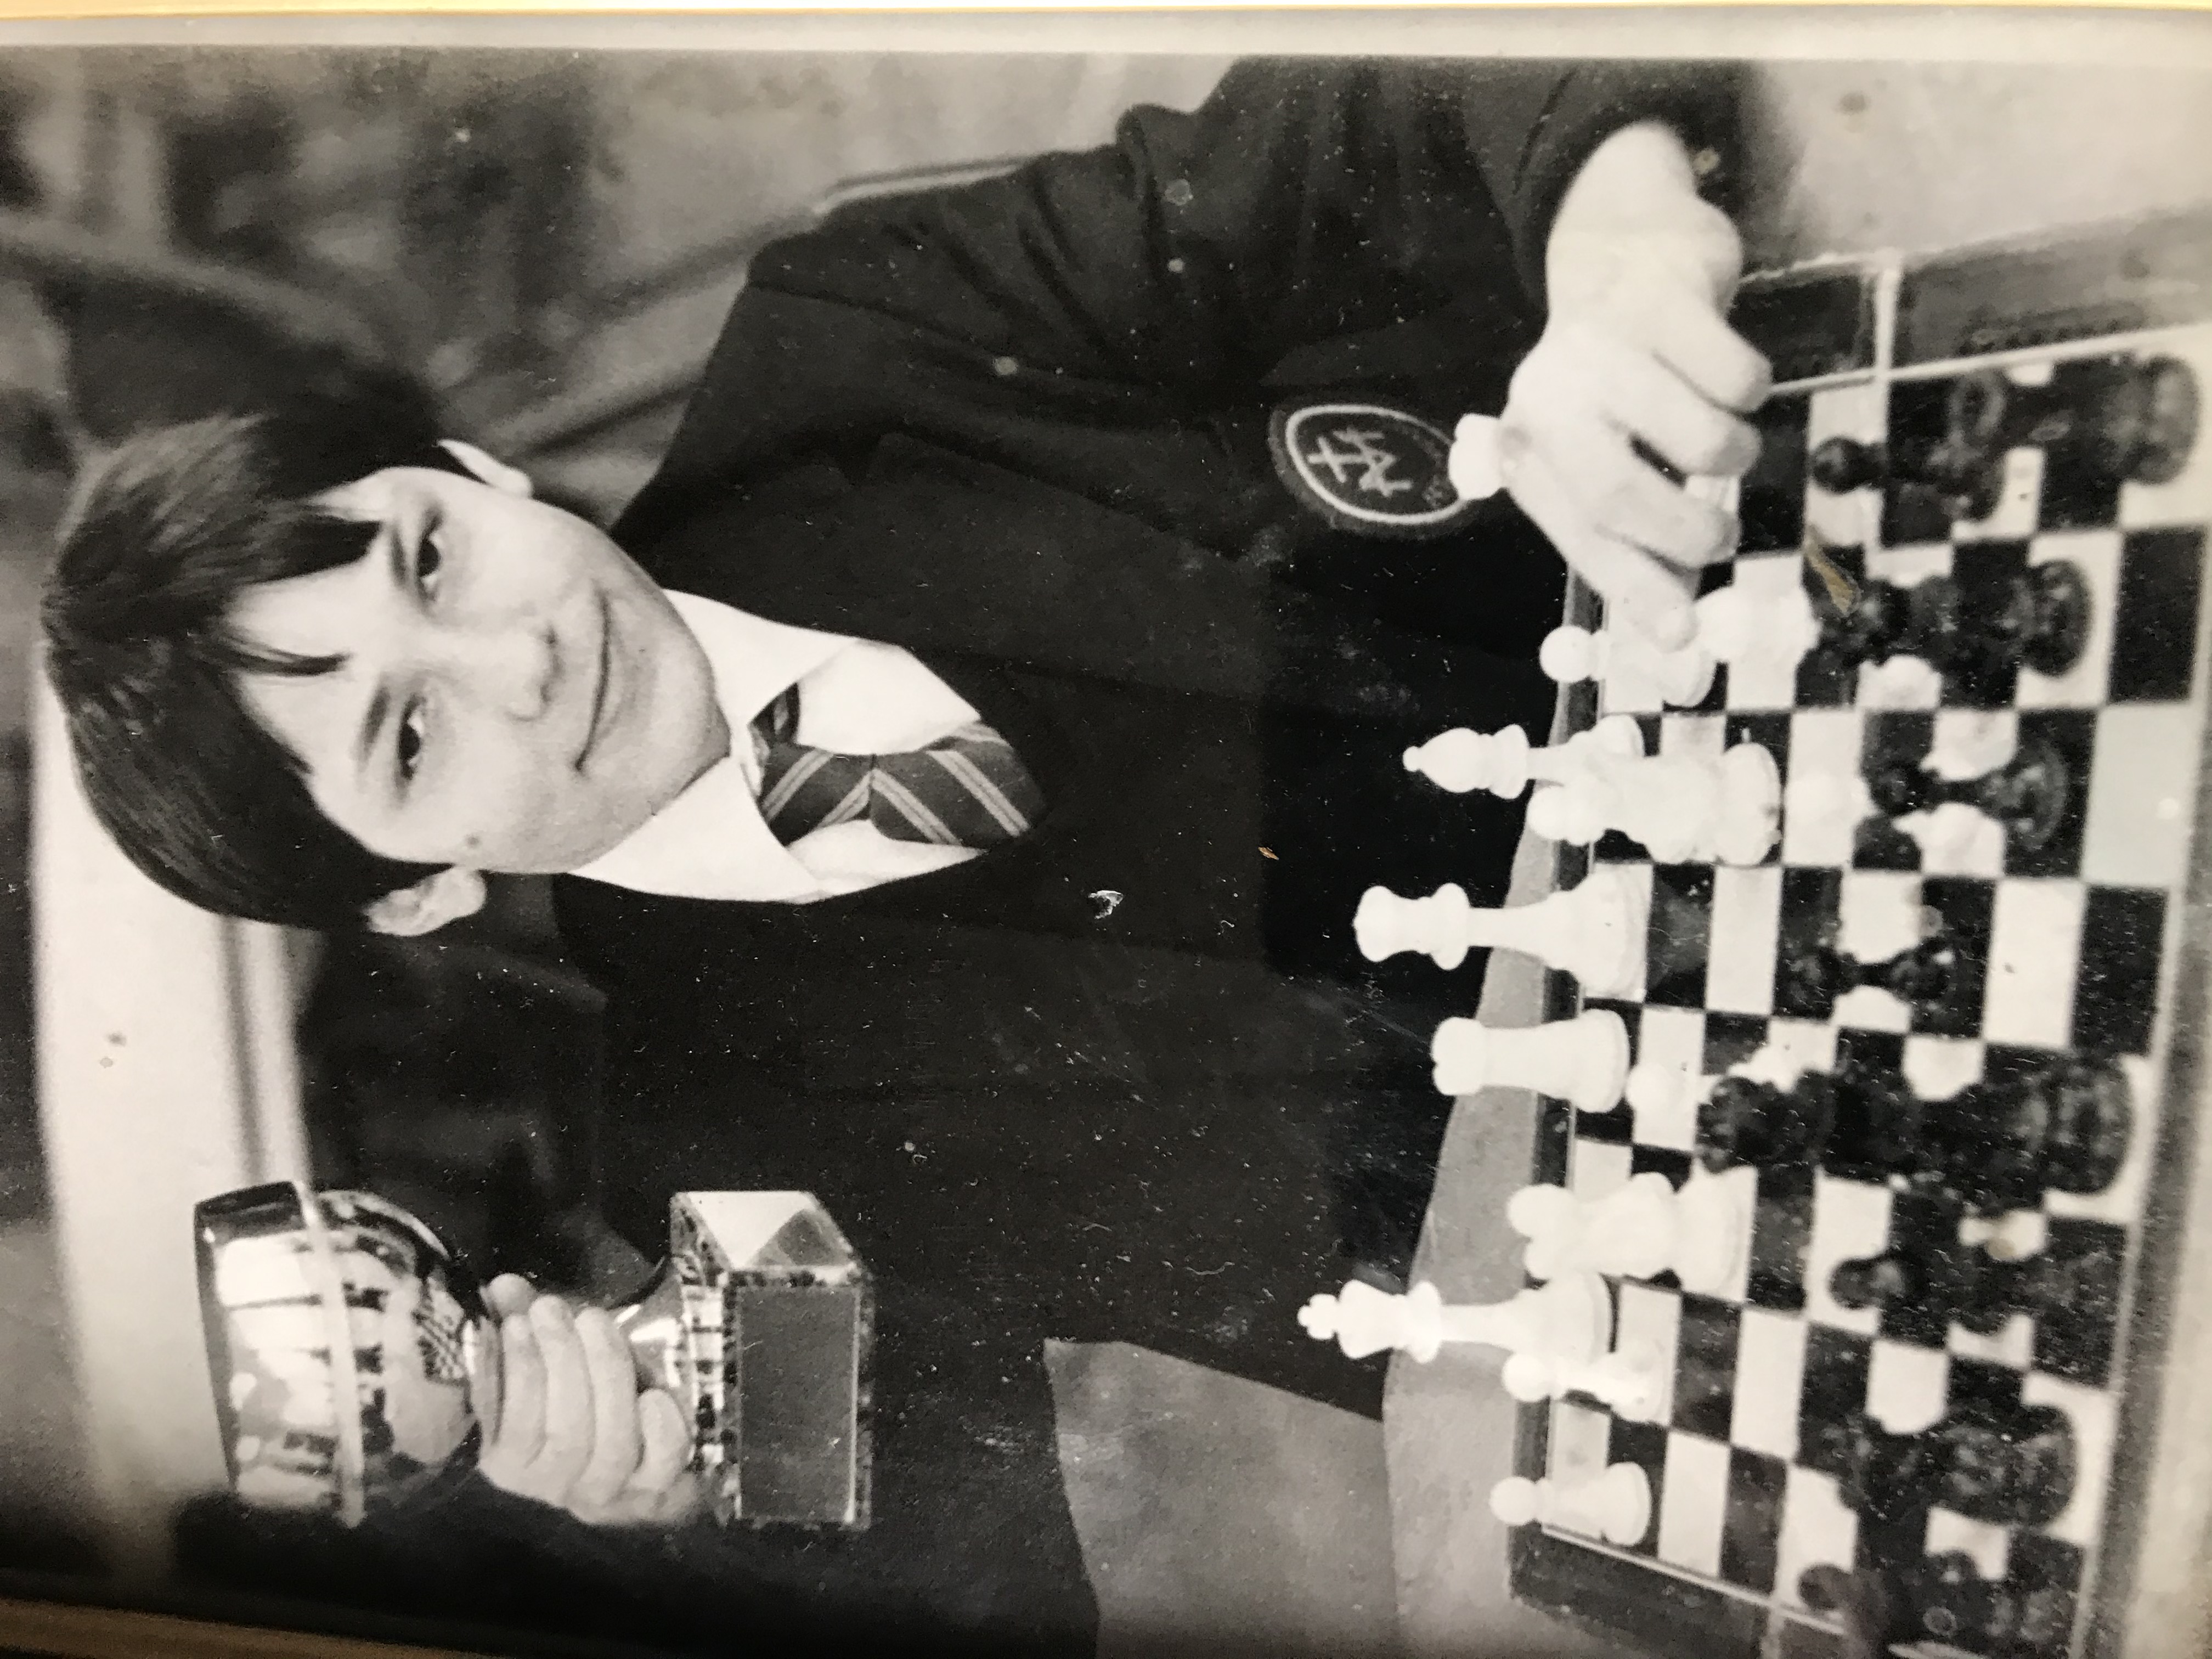 The Chess Circuit, Adam Raoof